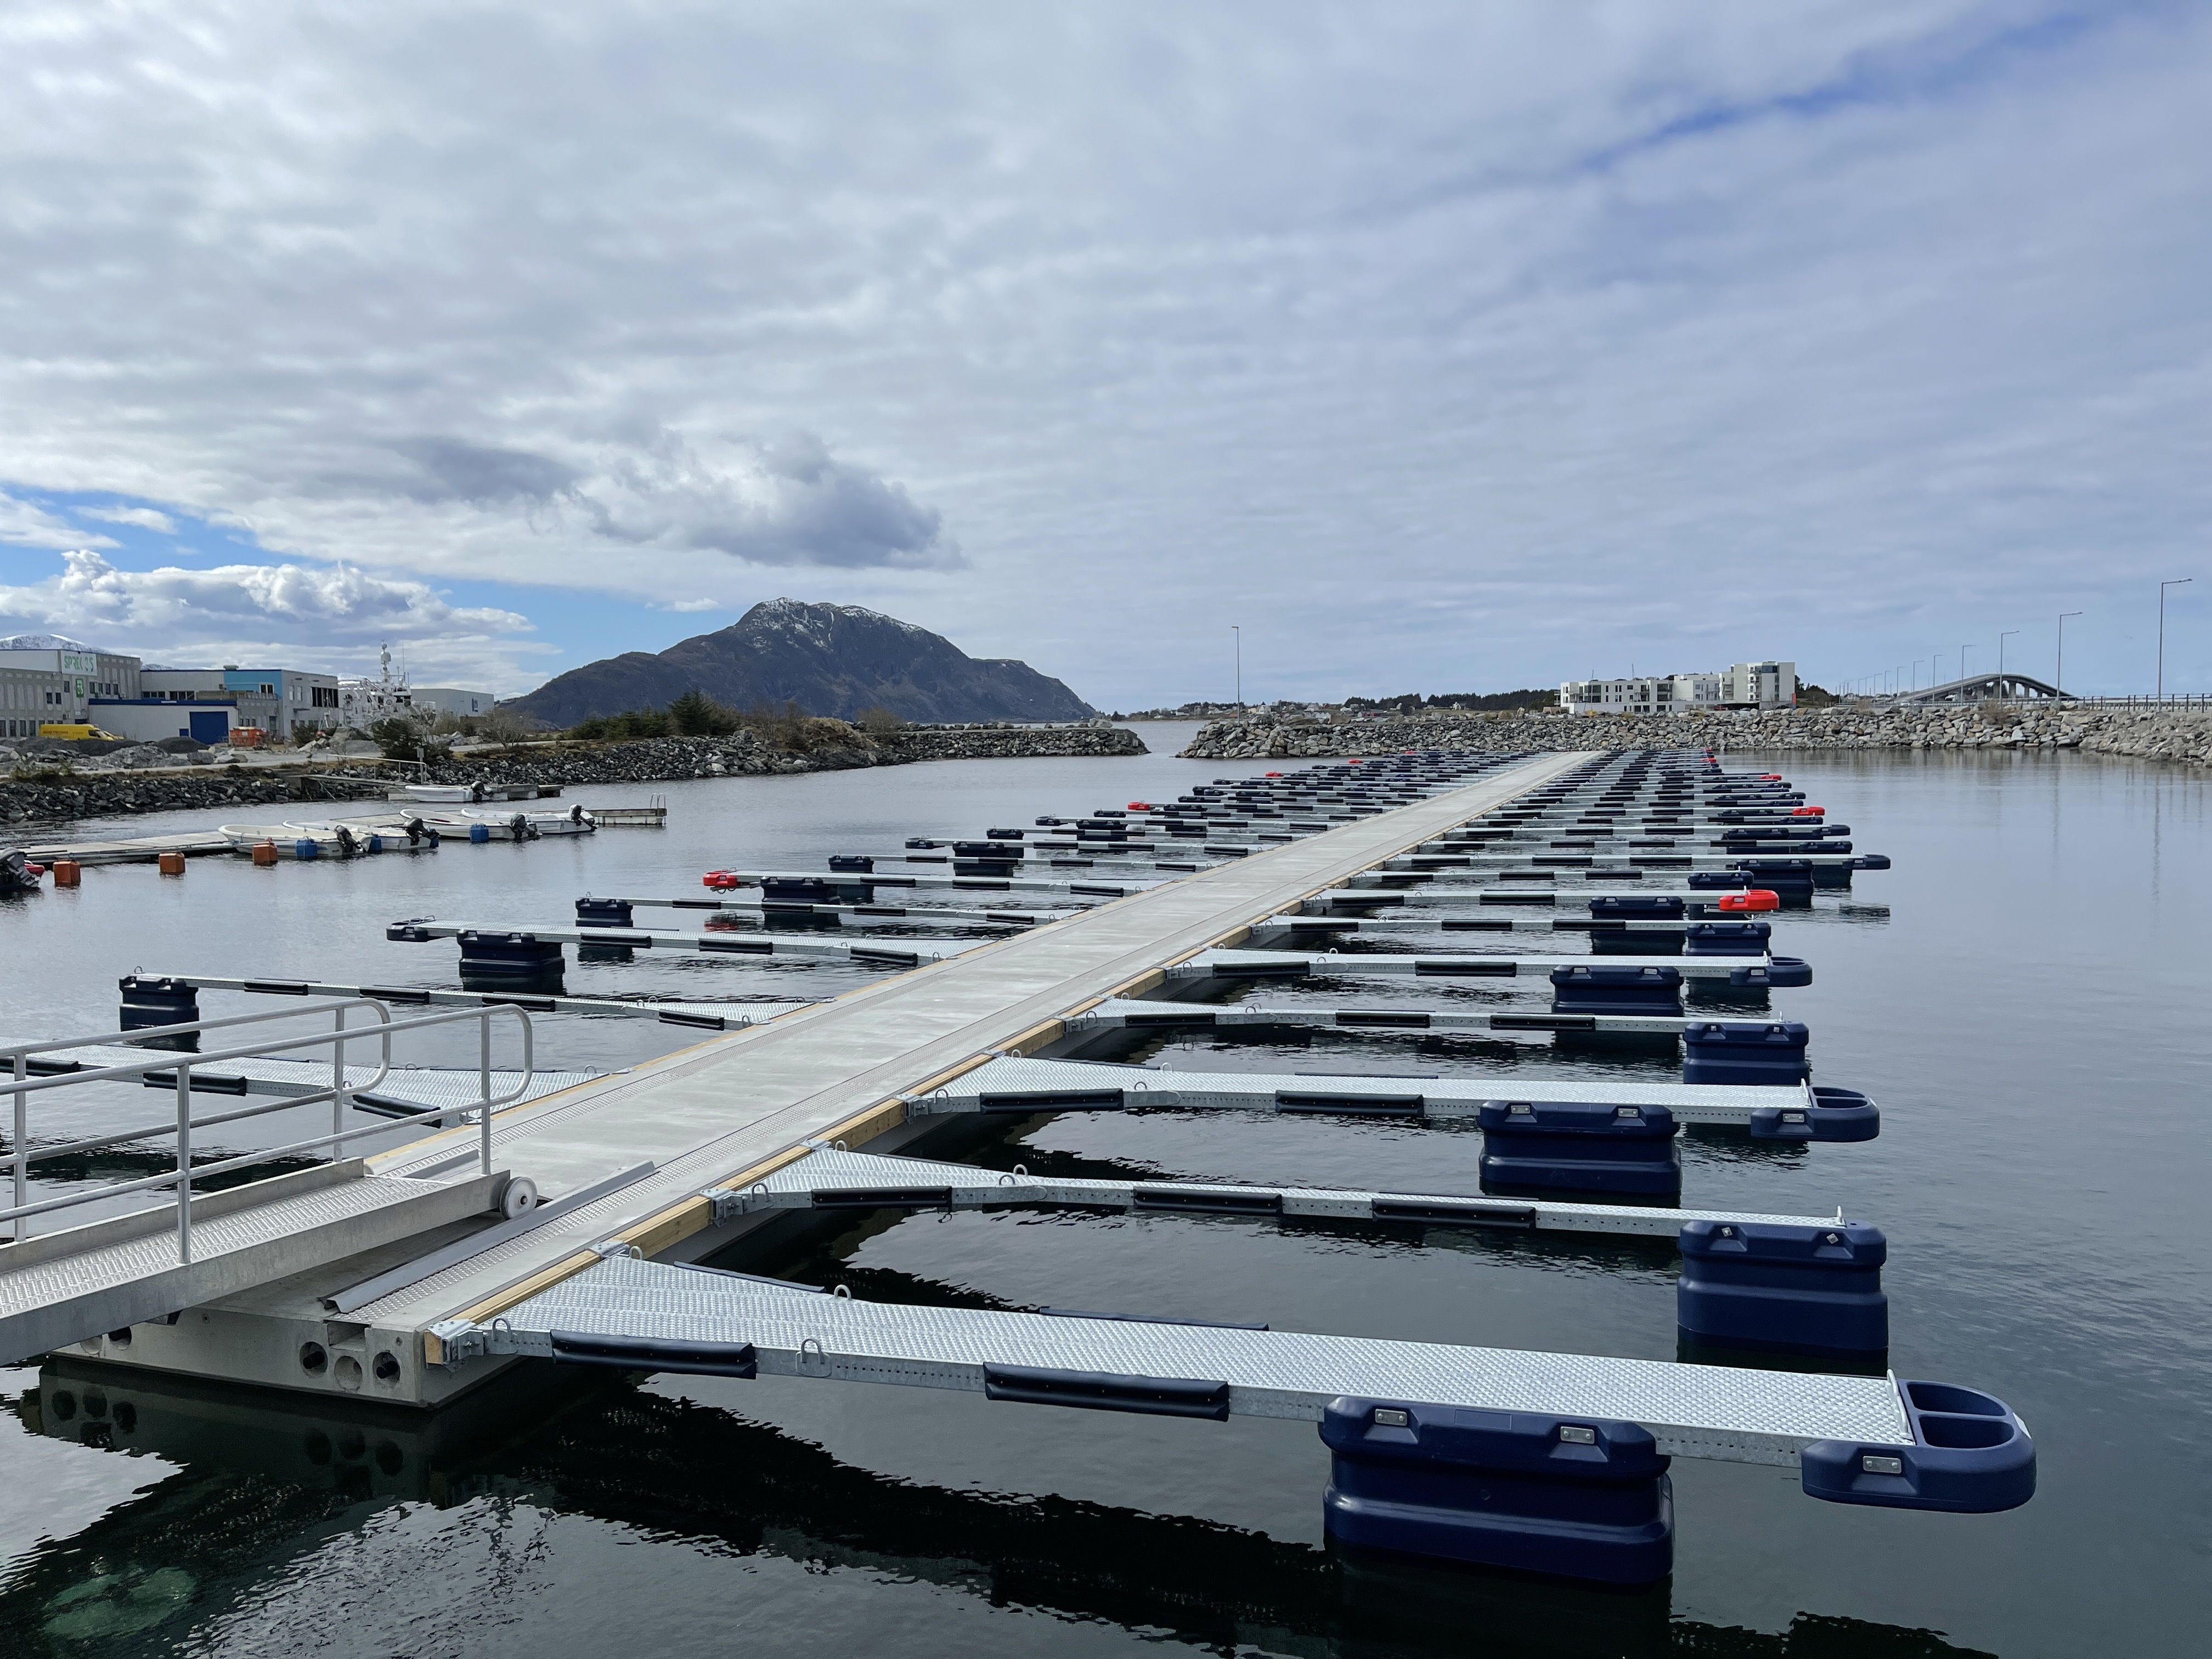 https://marinasolutions.no/uploads/Ytterland-småbåtforening_Valderøy_Marina-Solutions-AS-1.JPG